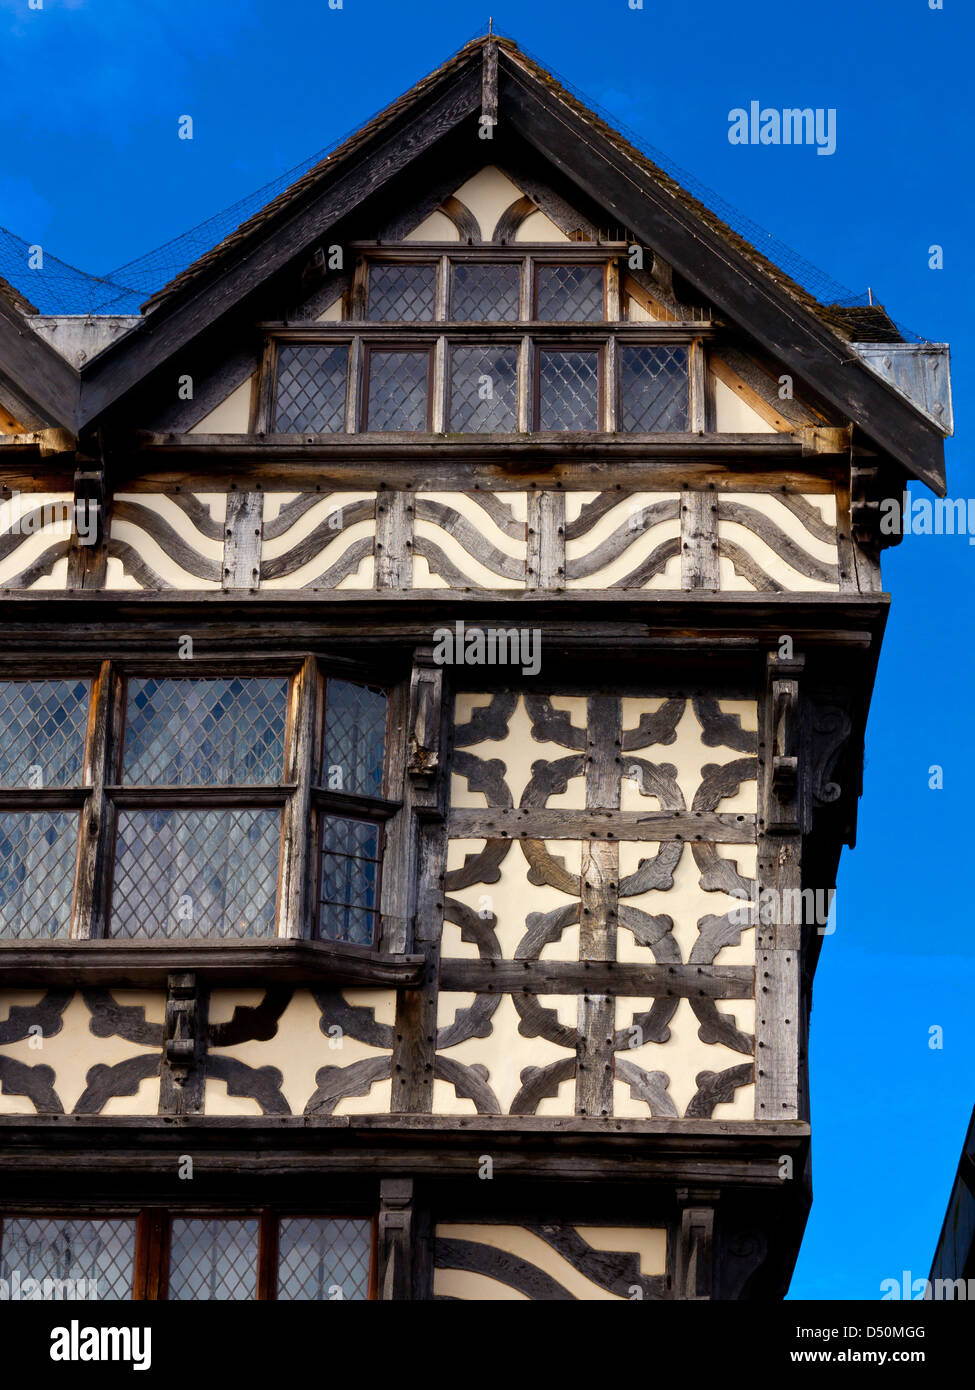 Elizabethan alten hohen Haus in Stafford Staffordshire umrahmt das größte Holz Stadthaus in England, die jetzt als Museum genutzt Stockfoto